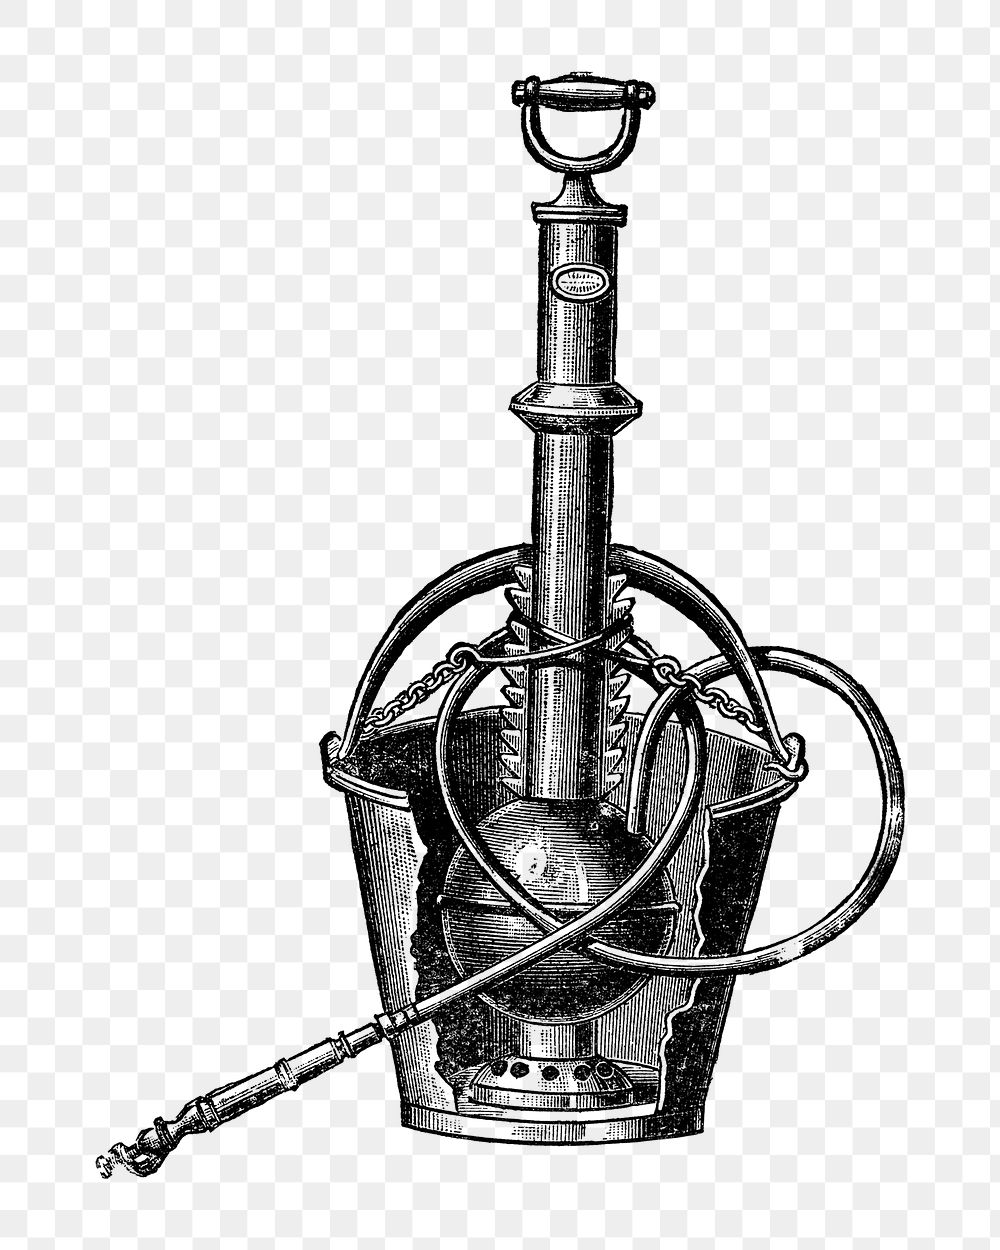 Vintage png garden pump illustration on transparent background, white and black design